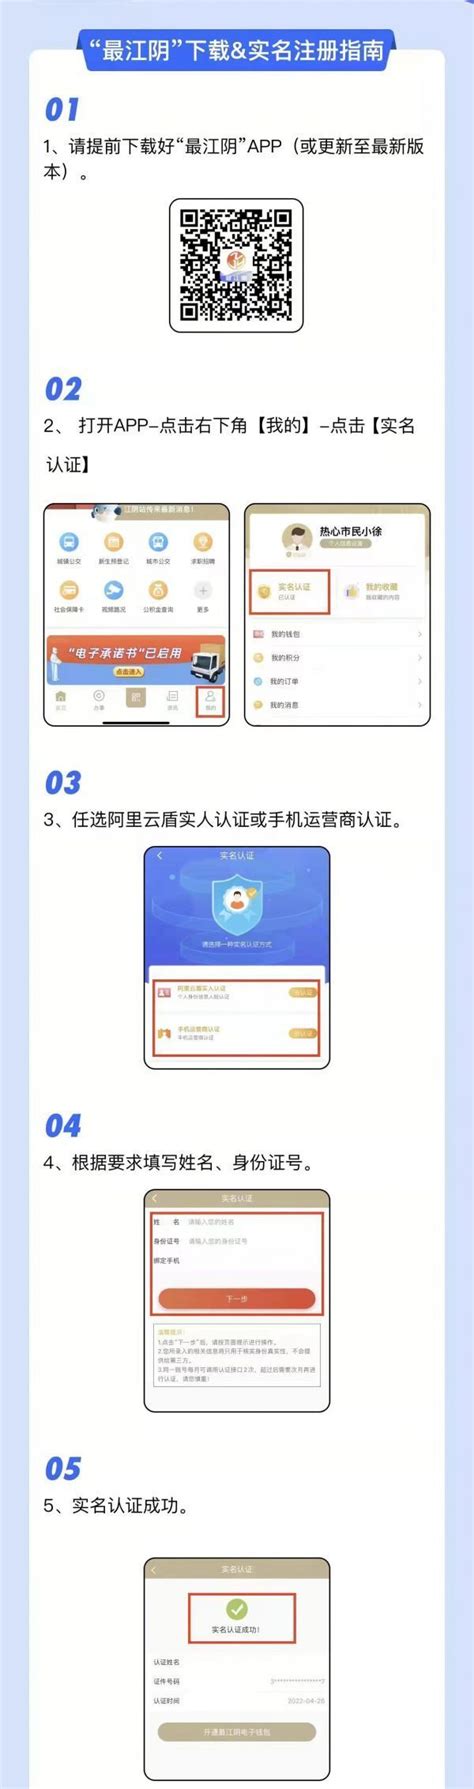 江阴公共自行车app下载-江阴公共自行车app安卓版下载v2.0.0.zq - 非凡软件站